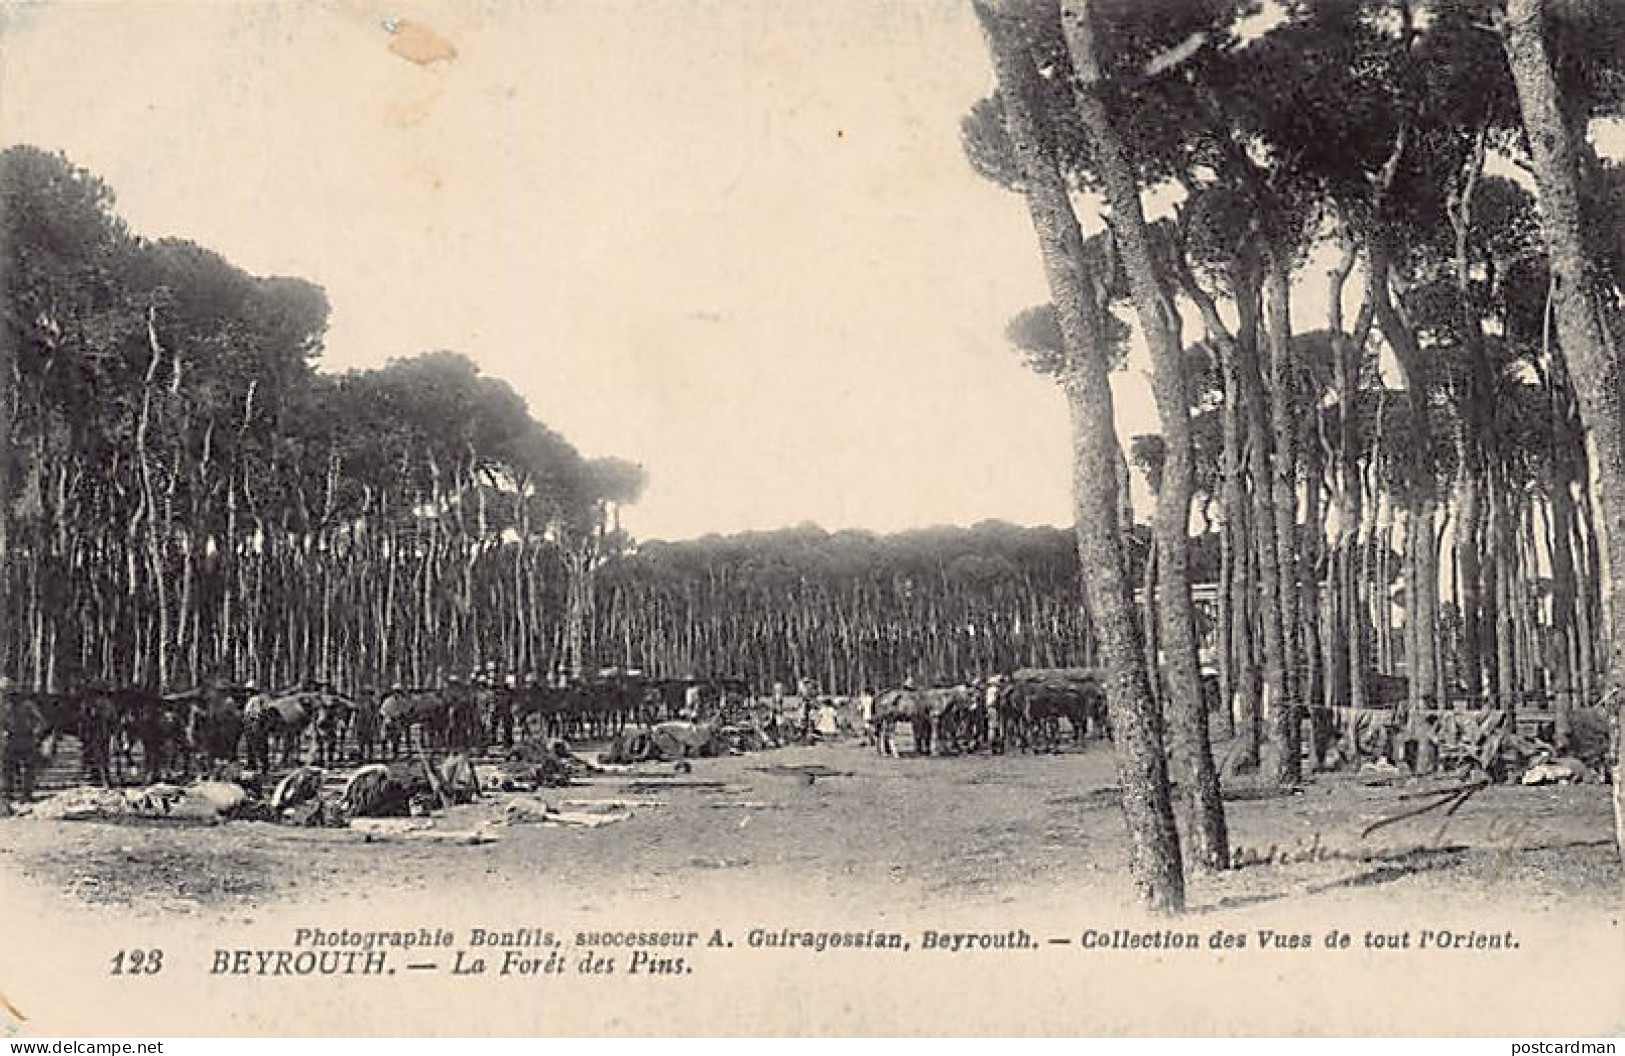 Liban - BEYROUTH - La Forêt De Spins - Camp Militaire - Ed. Photographie Bonfils, Successeur A. Guiragossian 123 - Lebanon